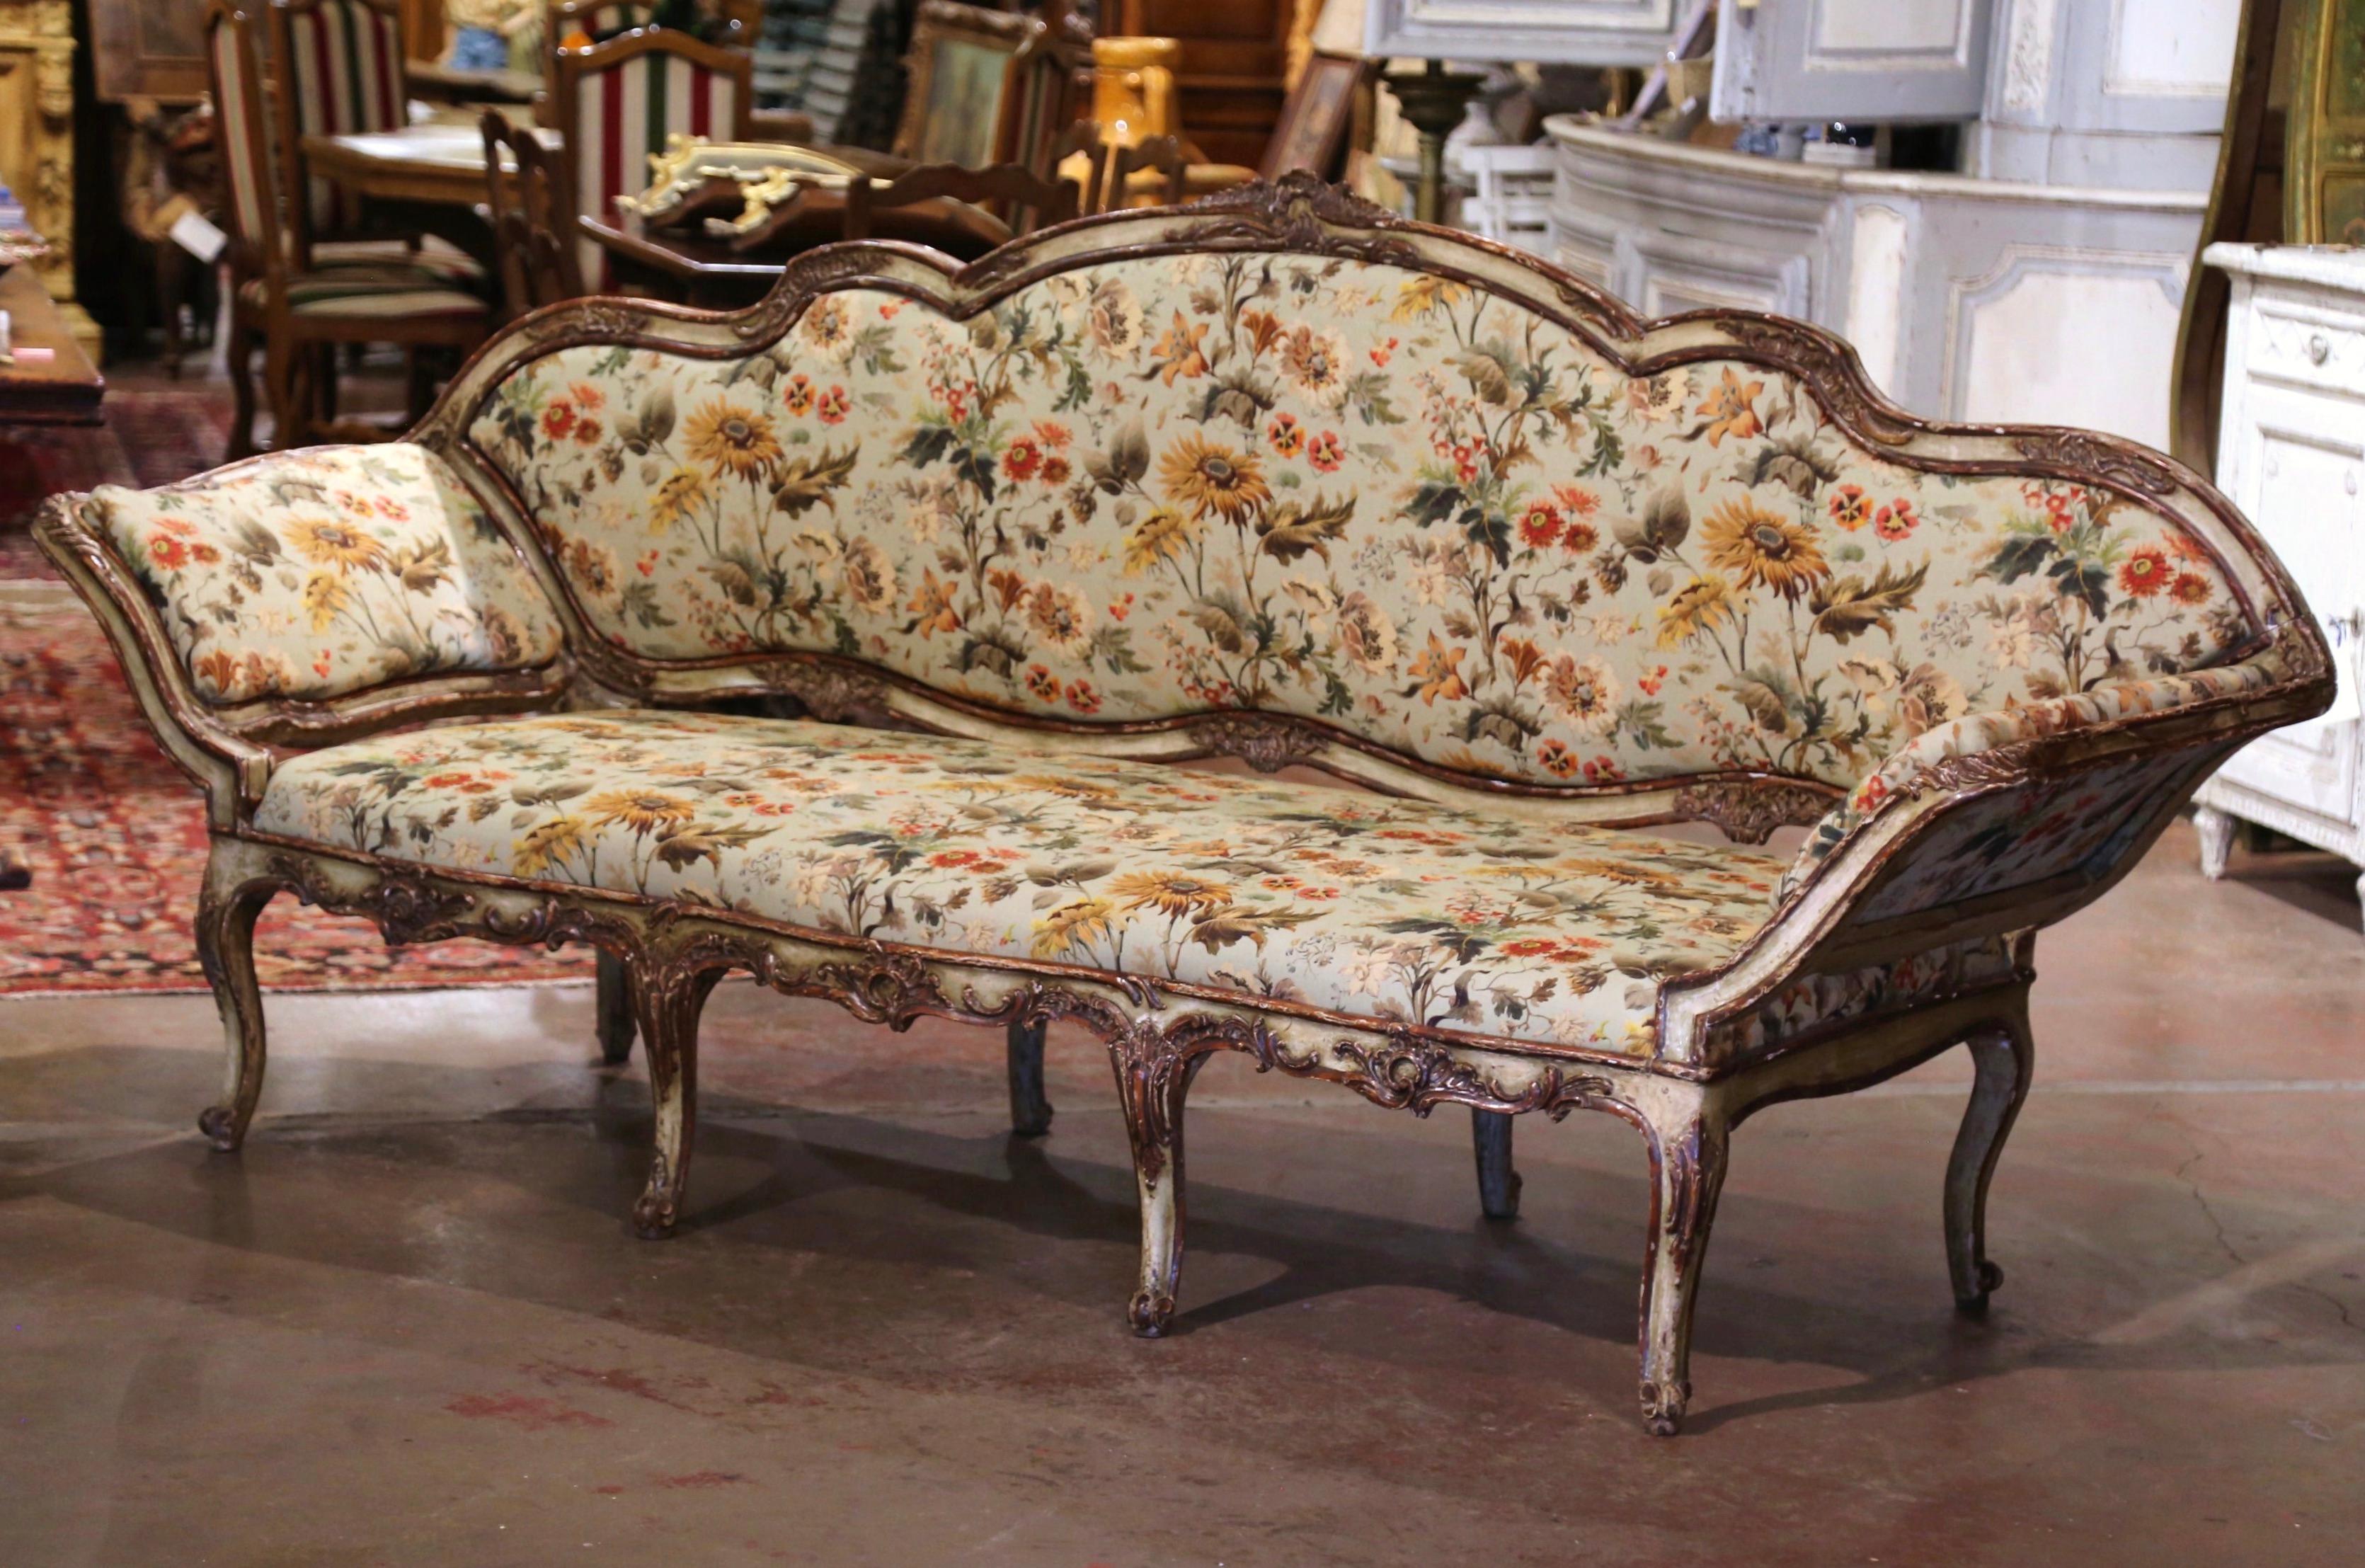 Cet élégant canapé peint ancien a été fabriqué en Italie, vers 1780. Ce canapé italien classique de style Louis XV présente un dossier façonné et des côtés en oreilles. Les parties rembourrées du dossier et des accoudoirs sont amovibles pour